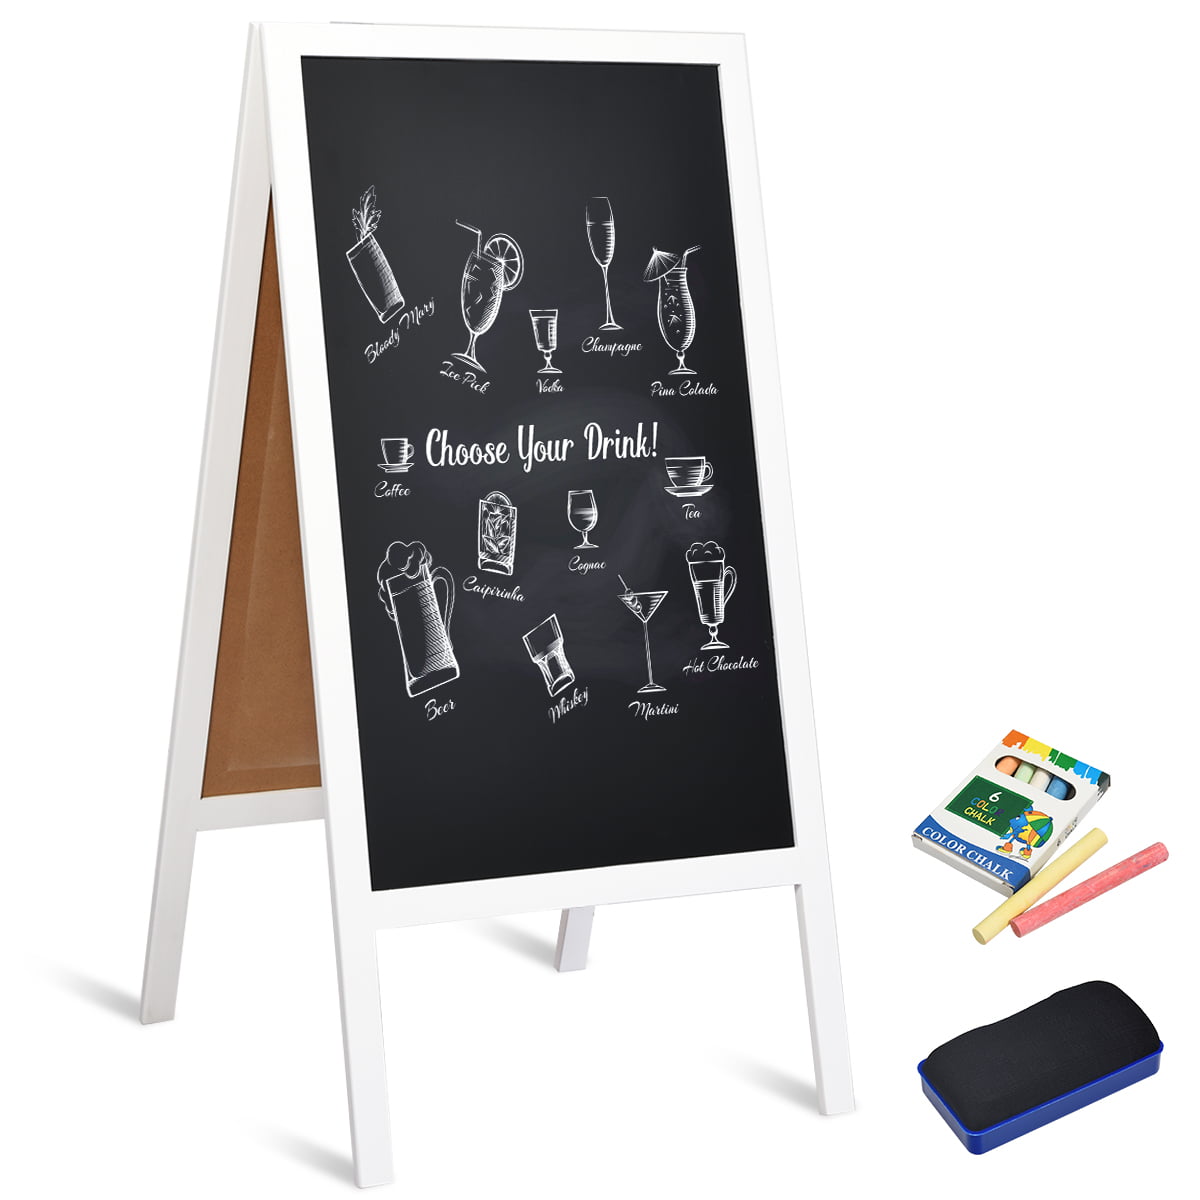 Fancy round oblong landscape chalkboard blackboard wedding sign shop menu a 